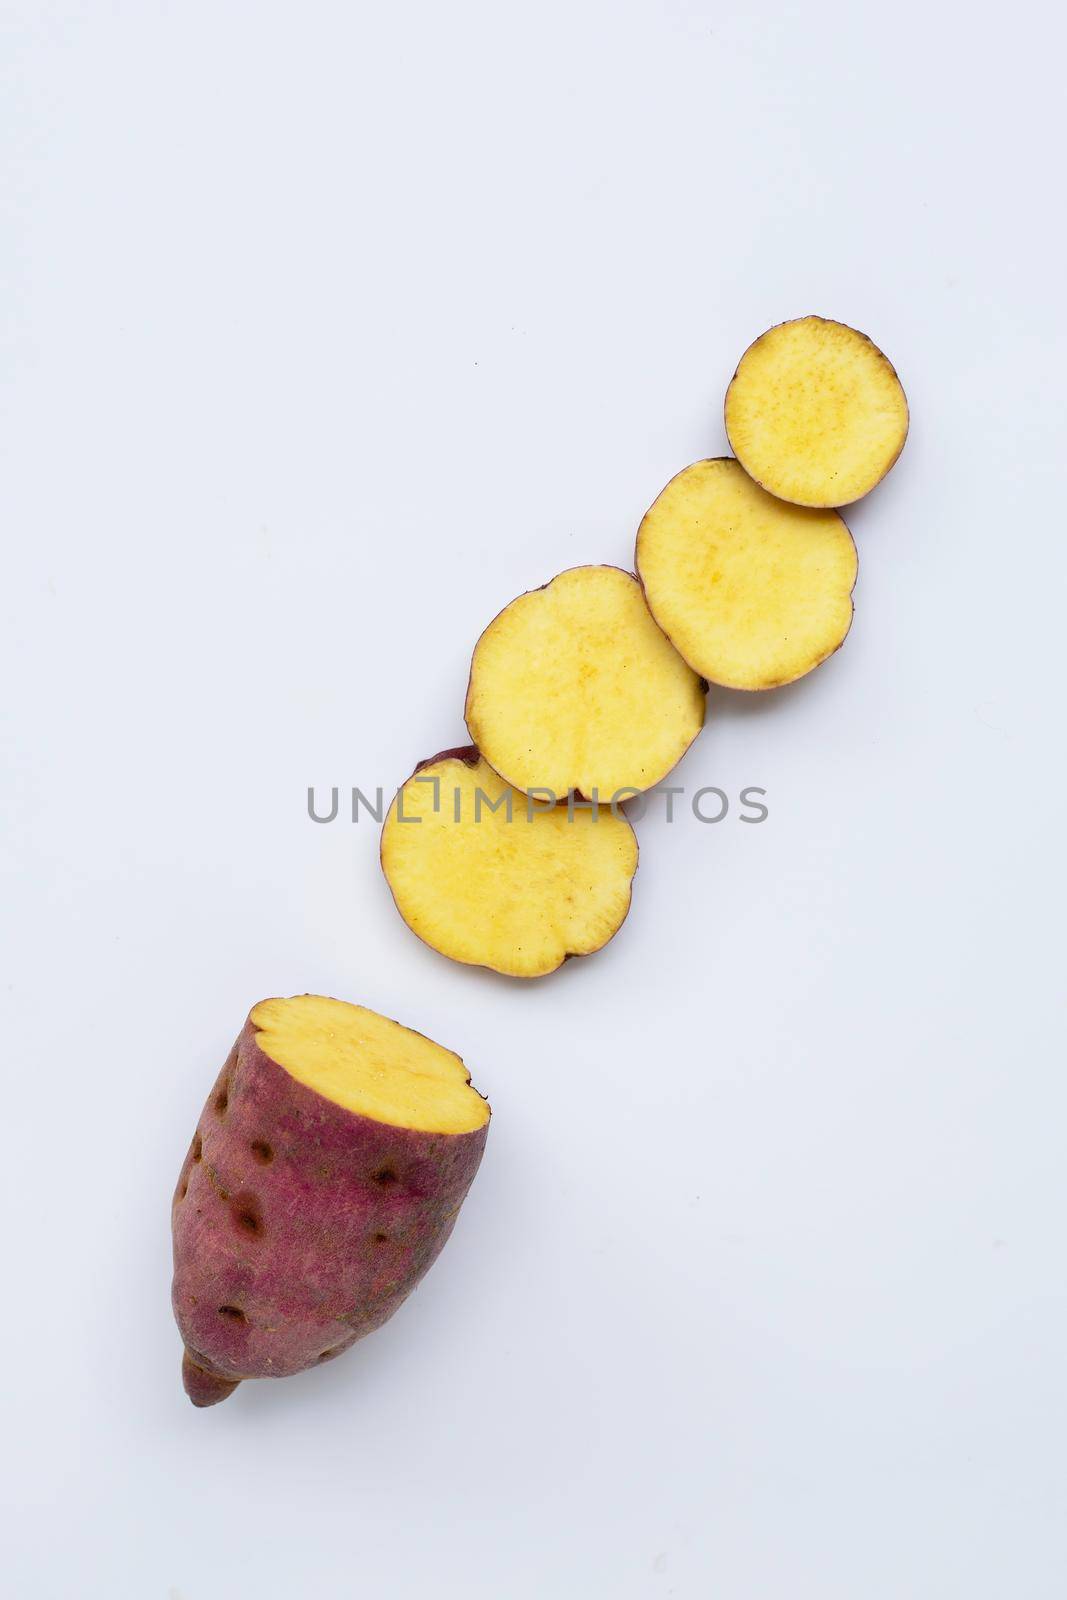 Sweet potato on white background. Top view